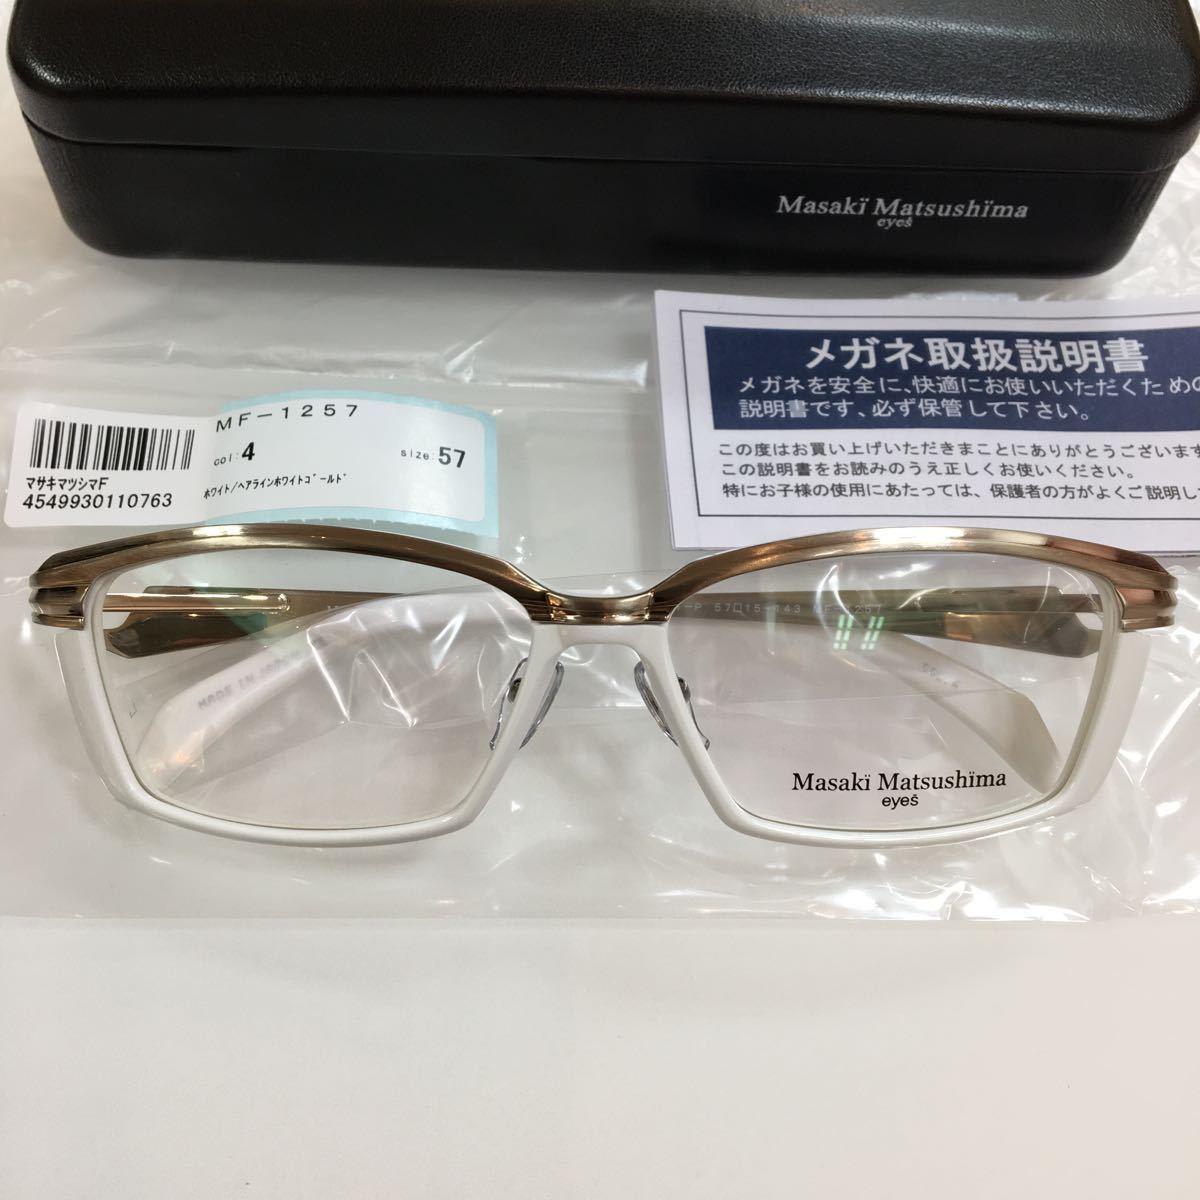 新品 Masaki Matsushima マサキマツシマ メガネフレーム 高品質 日本製 MF-1257 カラー4 ホワイト 白 メガネ 眼鏡 MF  MF- マサキ